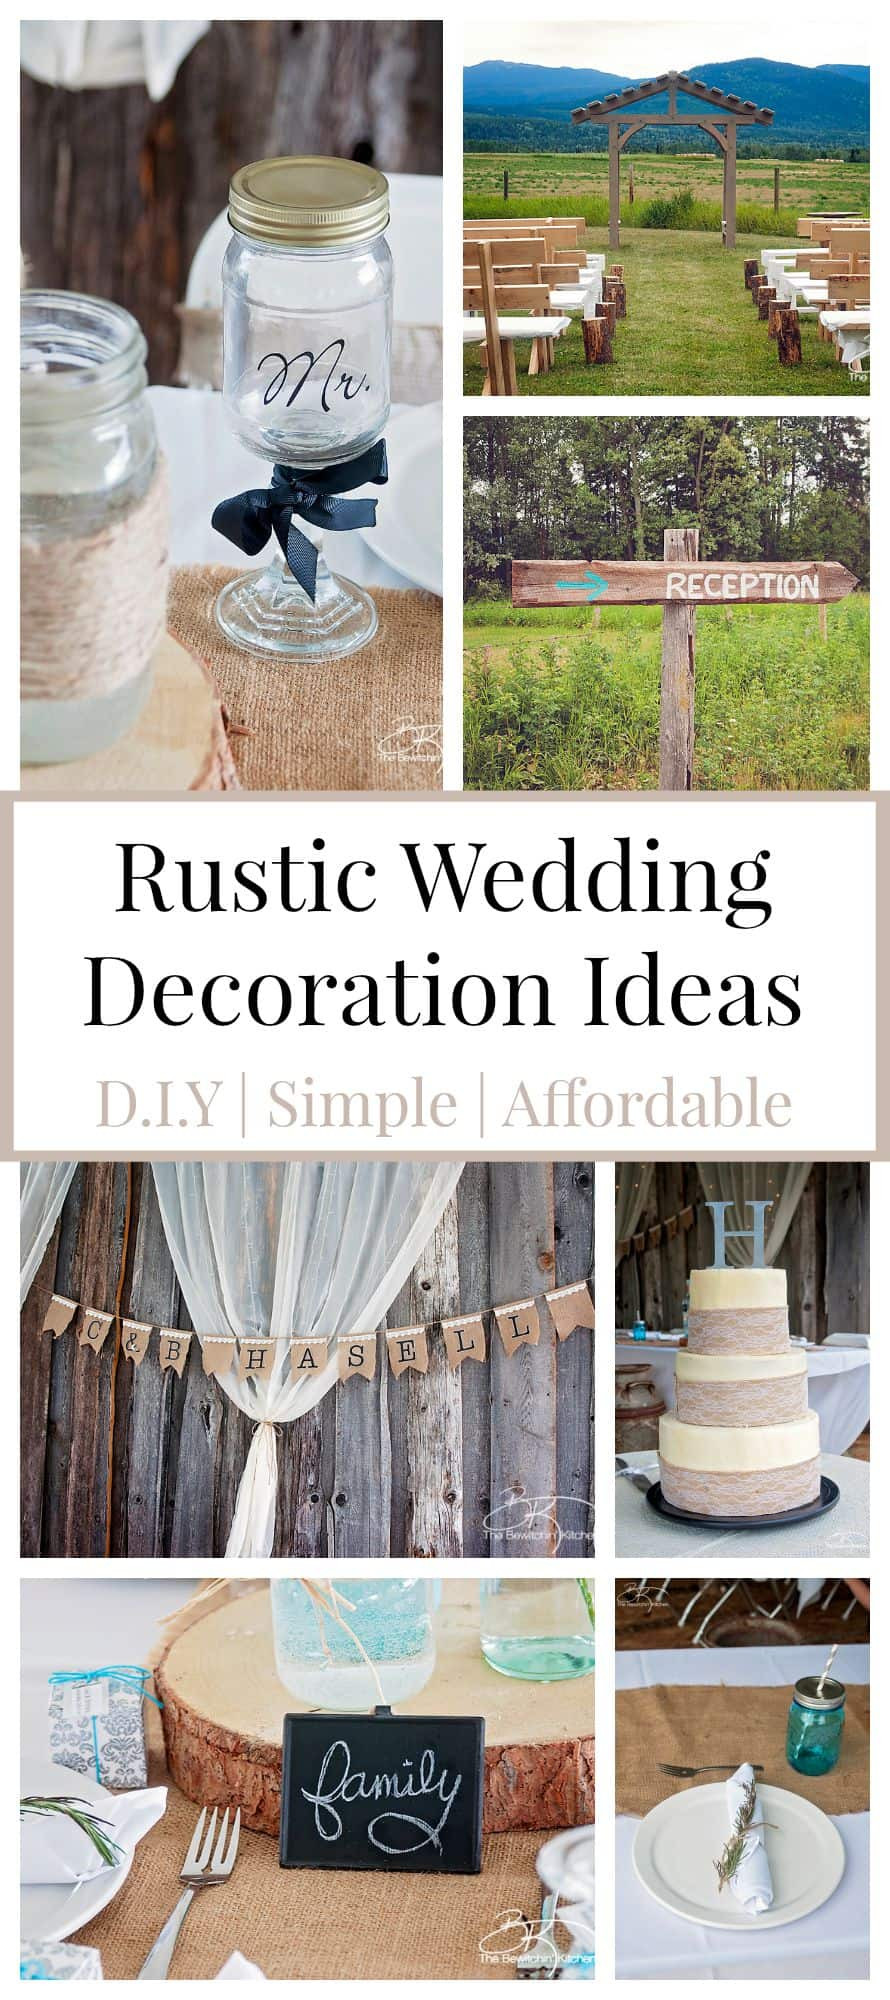 DIY Rustic Weddings
 Rustic Wedding Ideas That Are DIY & Affordable